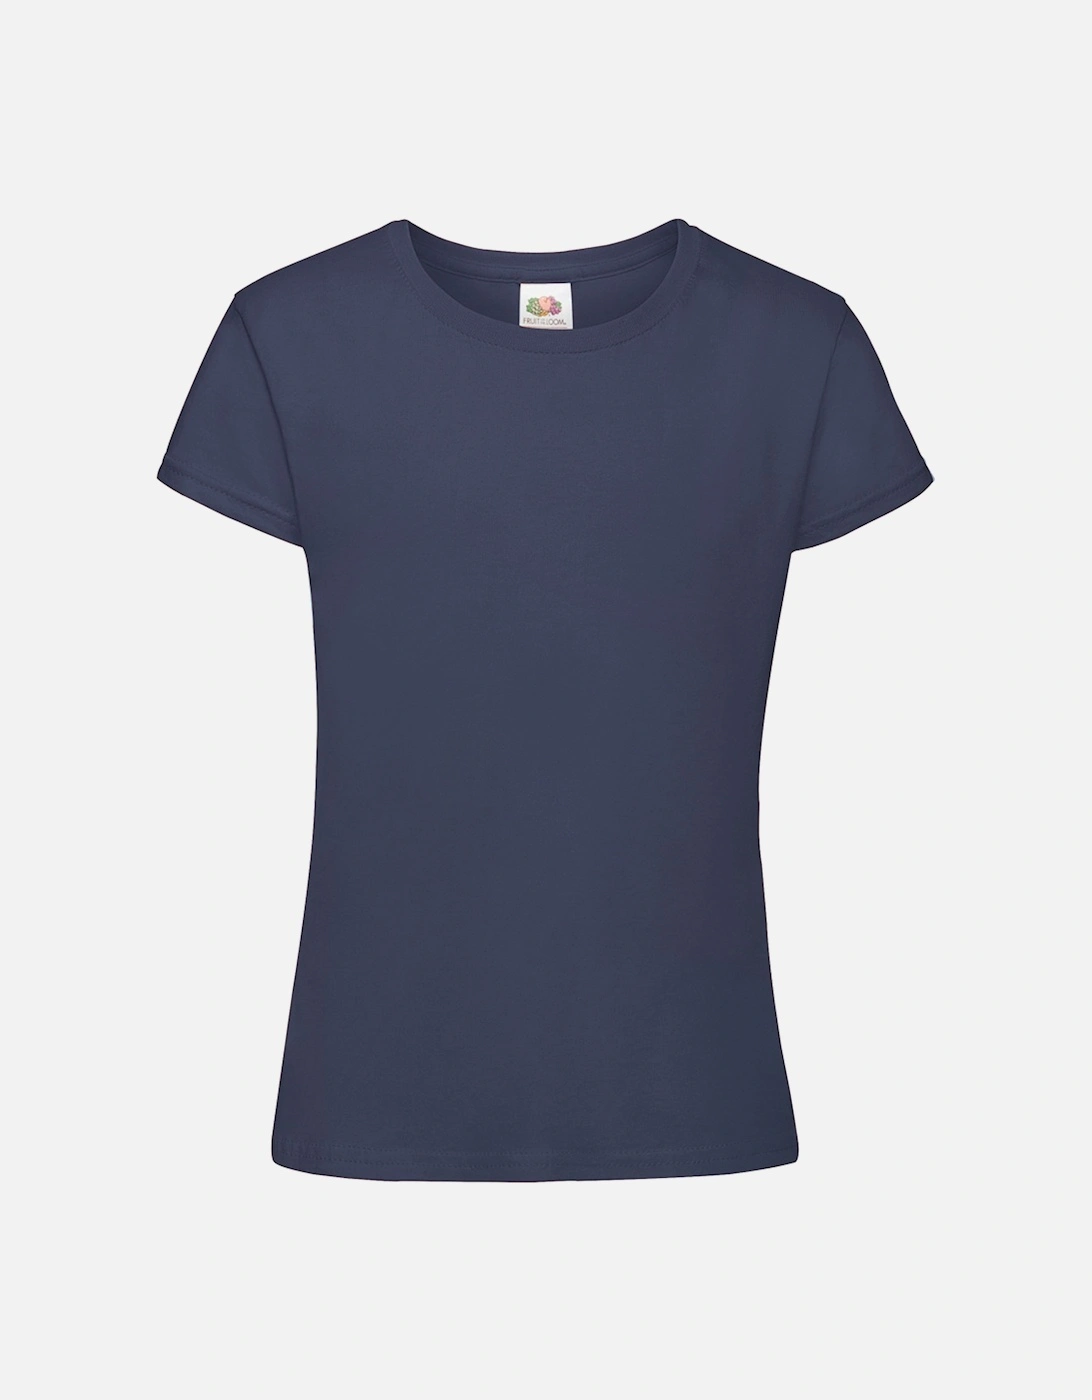 Girls Sofspun Short Sleeve T-Shirt, 3 of 2